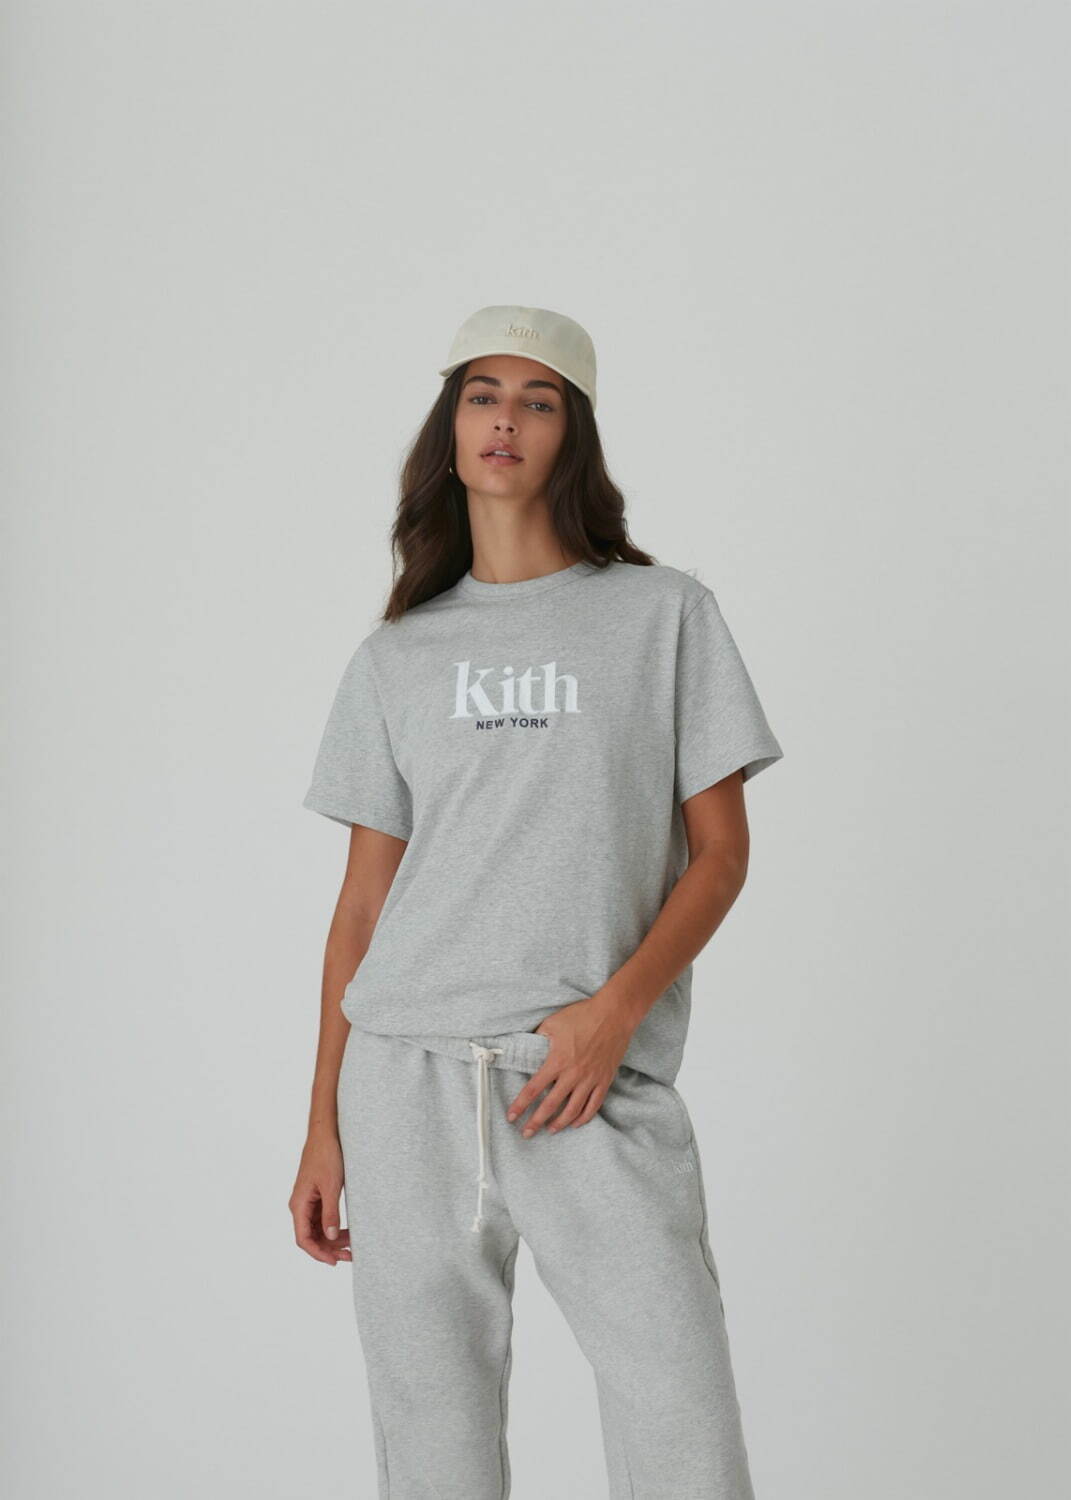 キス(Kith) 2021年春ウィメンズコレクション ディテール - 写真64